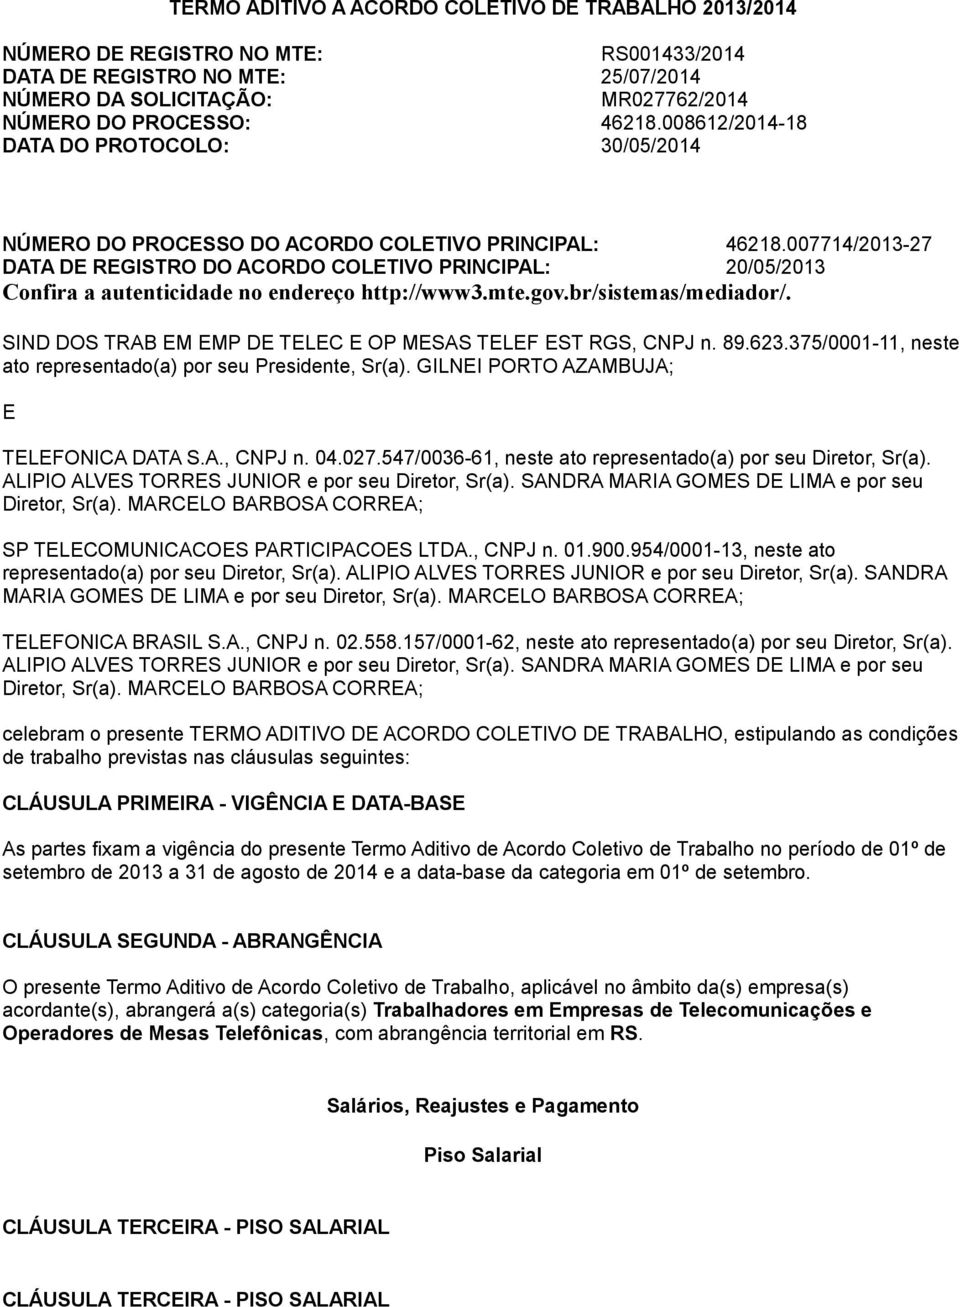 007714/2013-27 DATA DE REGISTRO DO ACORDO COLETIVO PRINCIPAL: 20/05/2013 Confira a autenticidade no endereço http://www3.mte.gov.br/sistemas/mediador/.